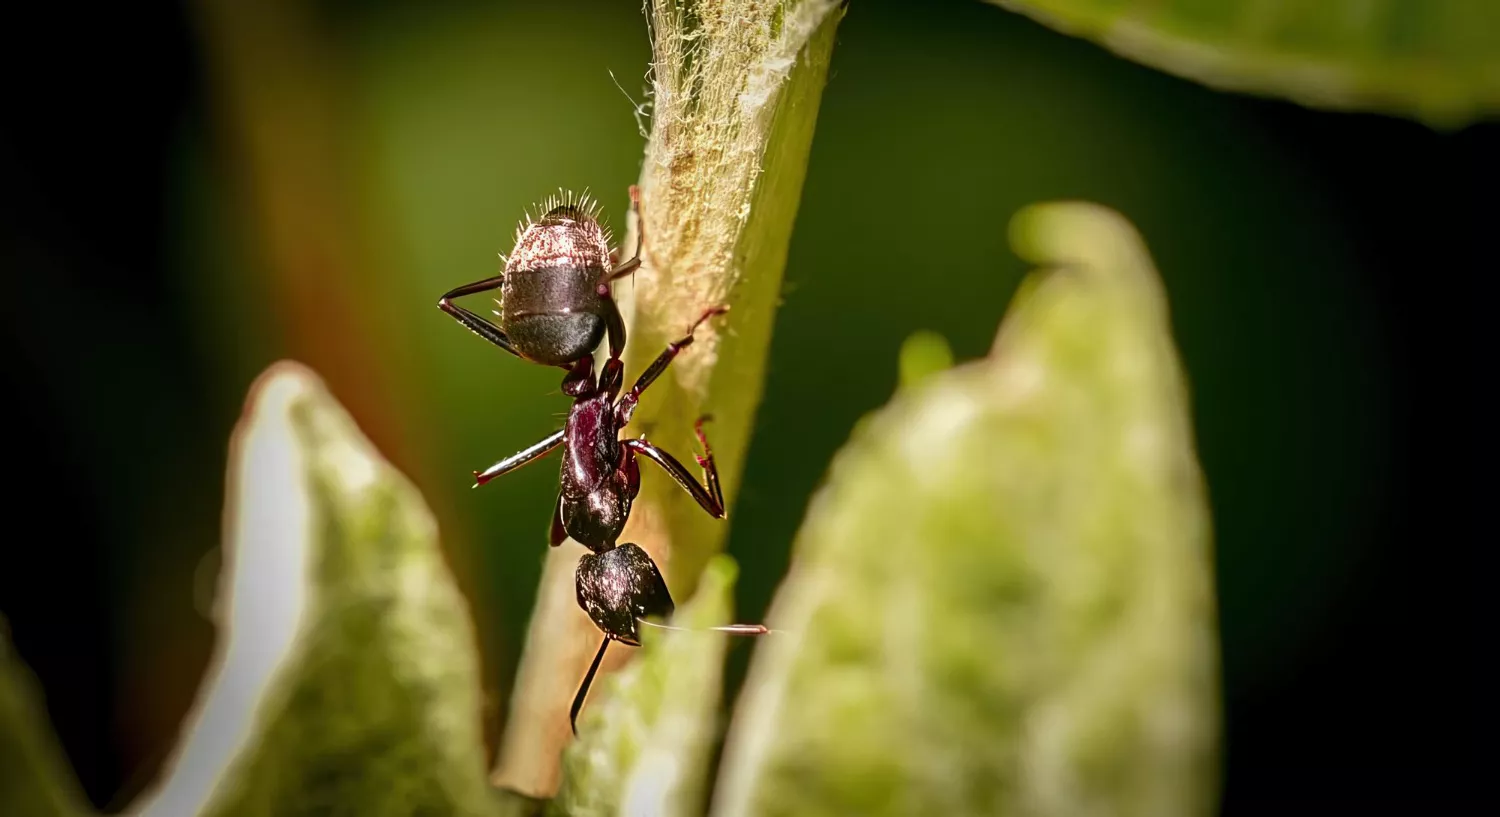 Invasion imminente : Les fourmis amazoniennes, une nouvelle espèce à surveiller de près